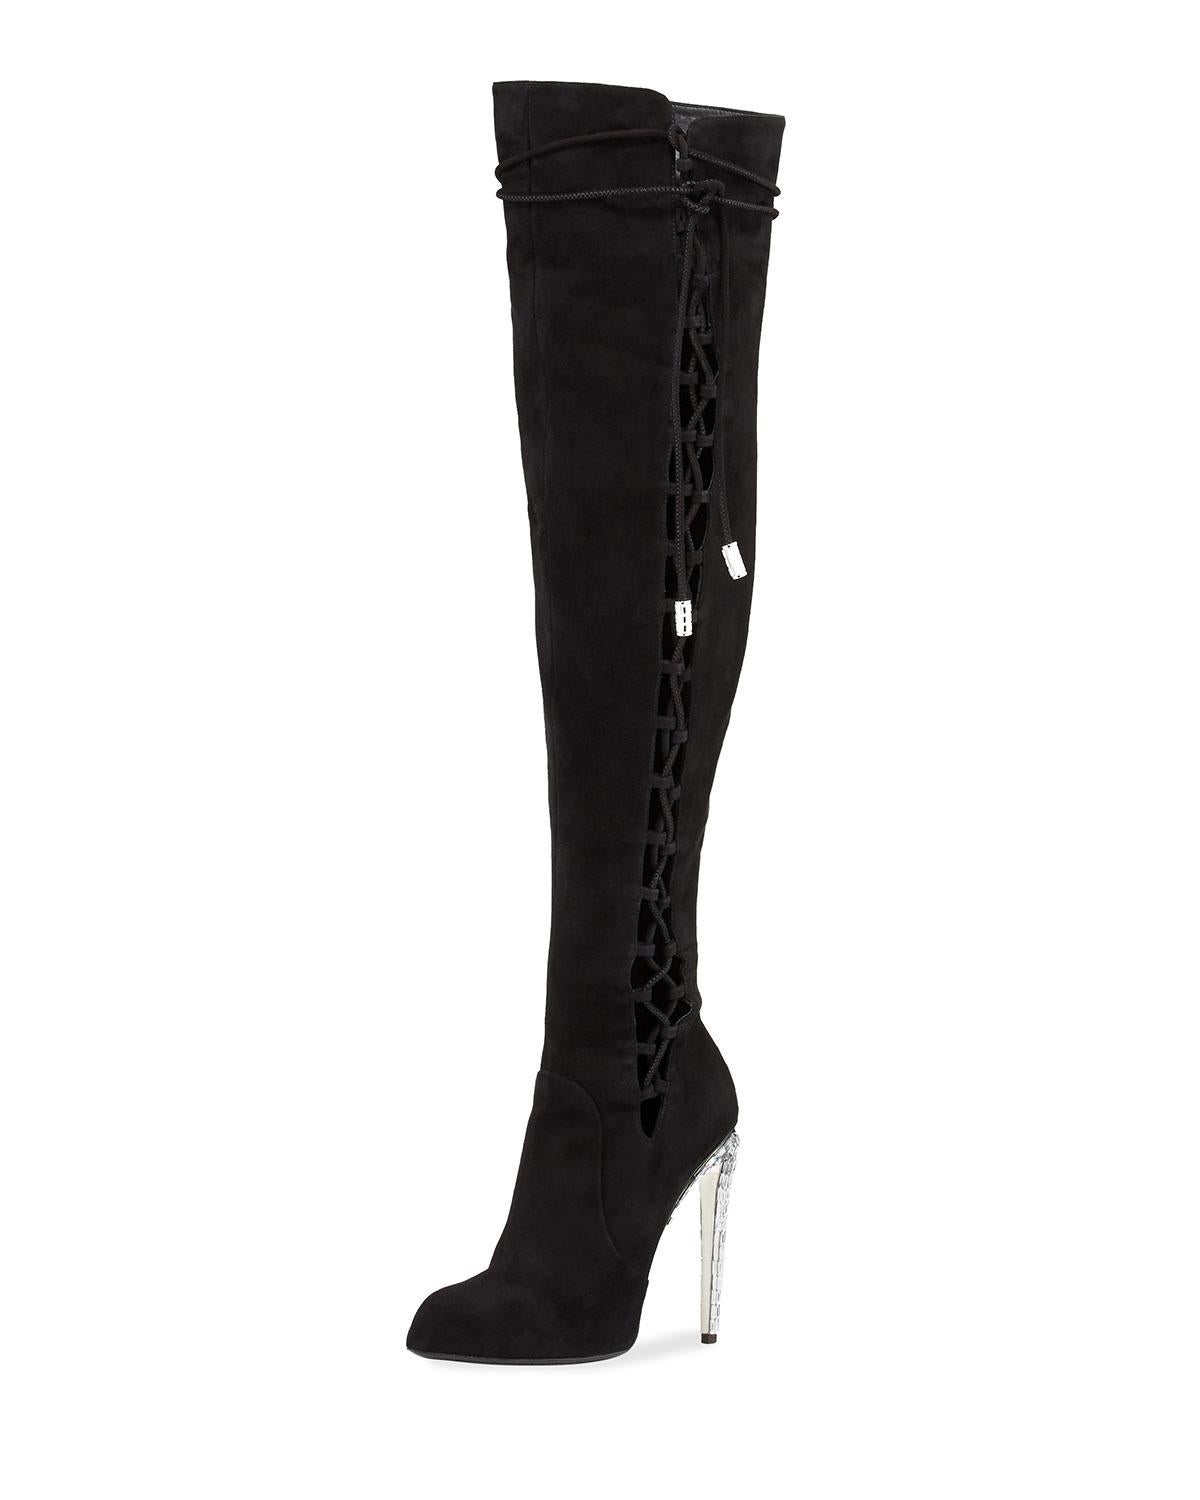 Glänzen Sie mit diesen sexy Over-the-Knee-Stiefeln von Giuseppe Zanotti Giuseppe for Jennifer Lopez.
Designer Größe 38 - US 8
Obermaterial aus schwarzem Veloursleder, Pull-on-Konstruktion.
5 Zoll kristallbesetzter Stilettoabsatz.
Seitliche Schnürung